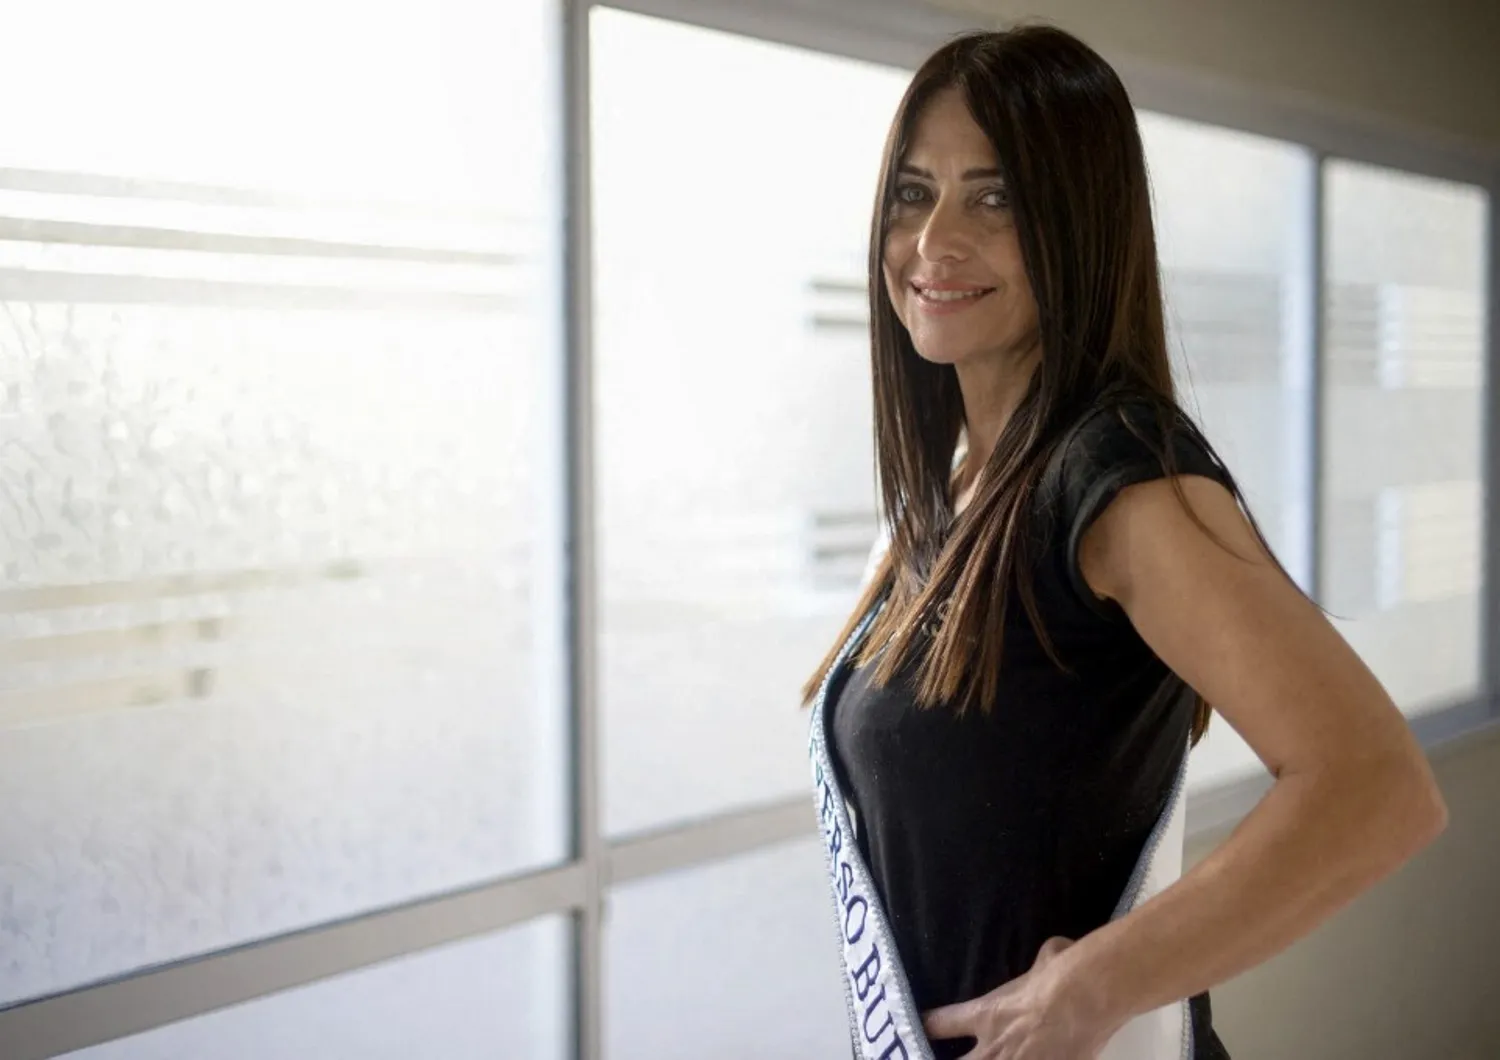 All'età di 60 anni, Alejandra Marisa Rodríguez sfida le convenzioni diventando Miss Universo Buenos Aires.